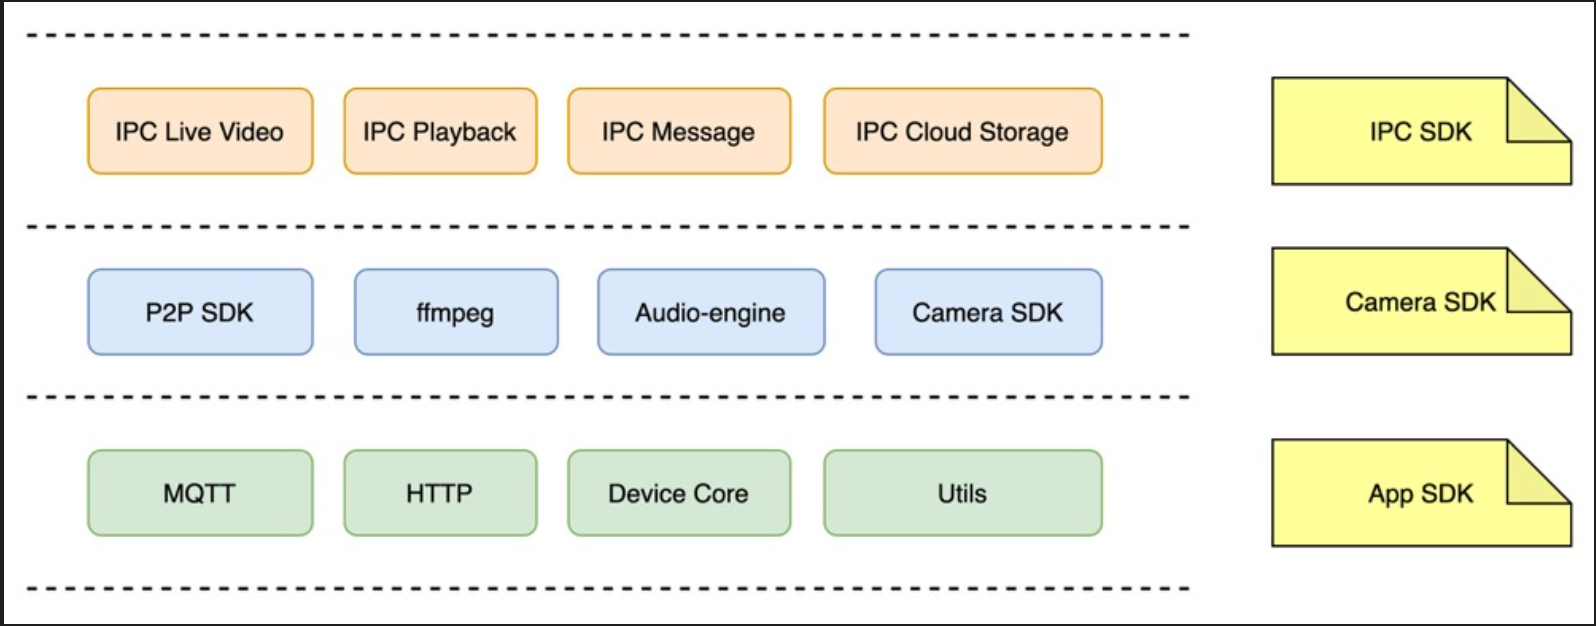 安卓版 IPC SDK 架构